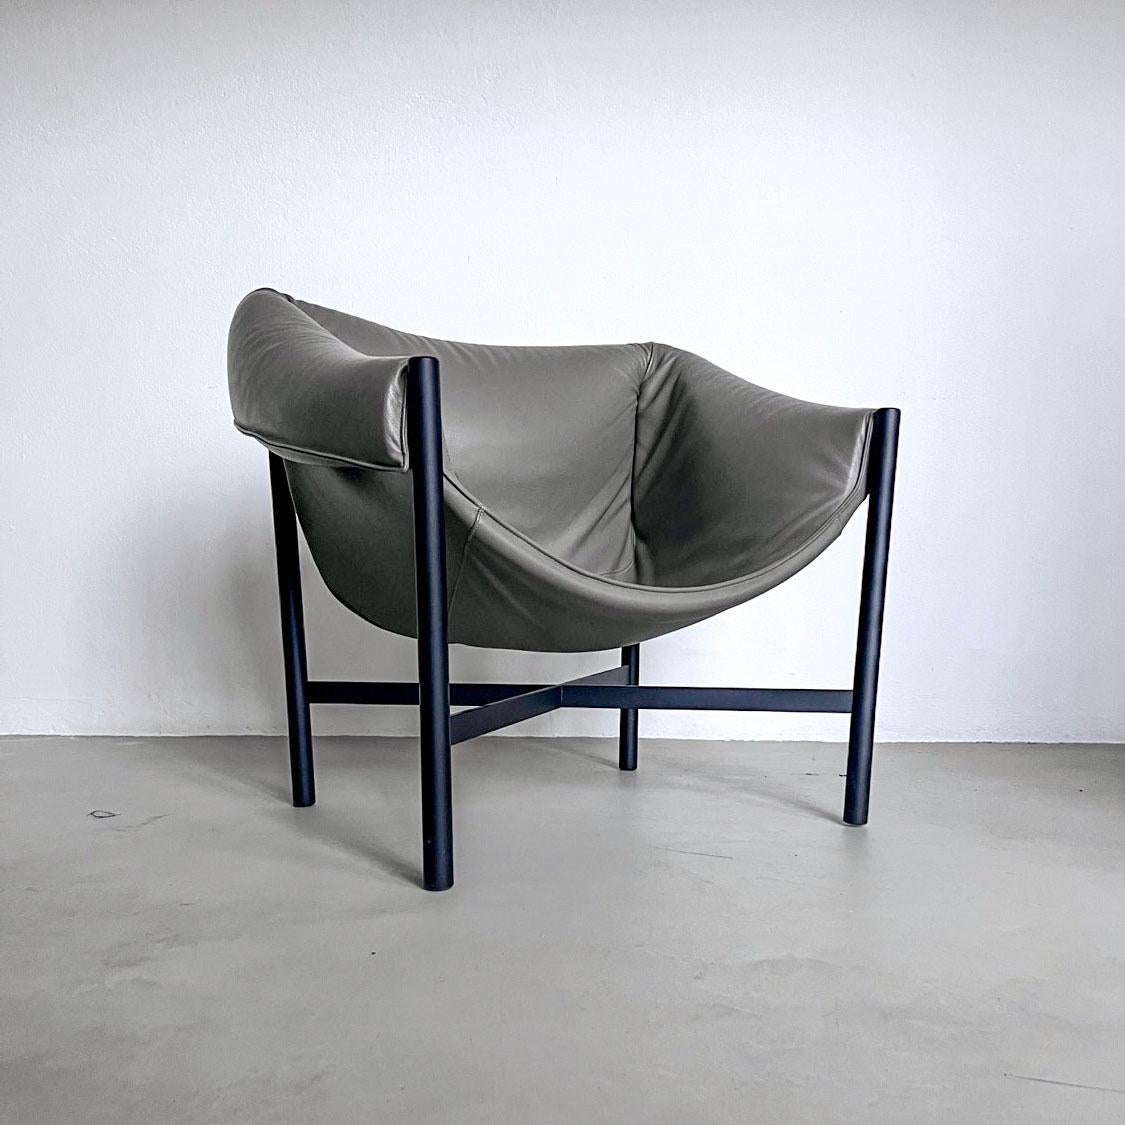 Zeitgenössischer Sessel - Collectional Design Lounge Chair - Wohnzimmersessel aus grauem Leder

Entworfen von  Der Stuhl Falstaff von Stefan Diez für die Sammelmöbelmarke Dante Goods and Bads verbindet ein essenzielles, mattschwarz